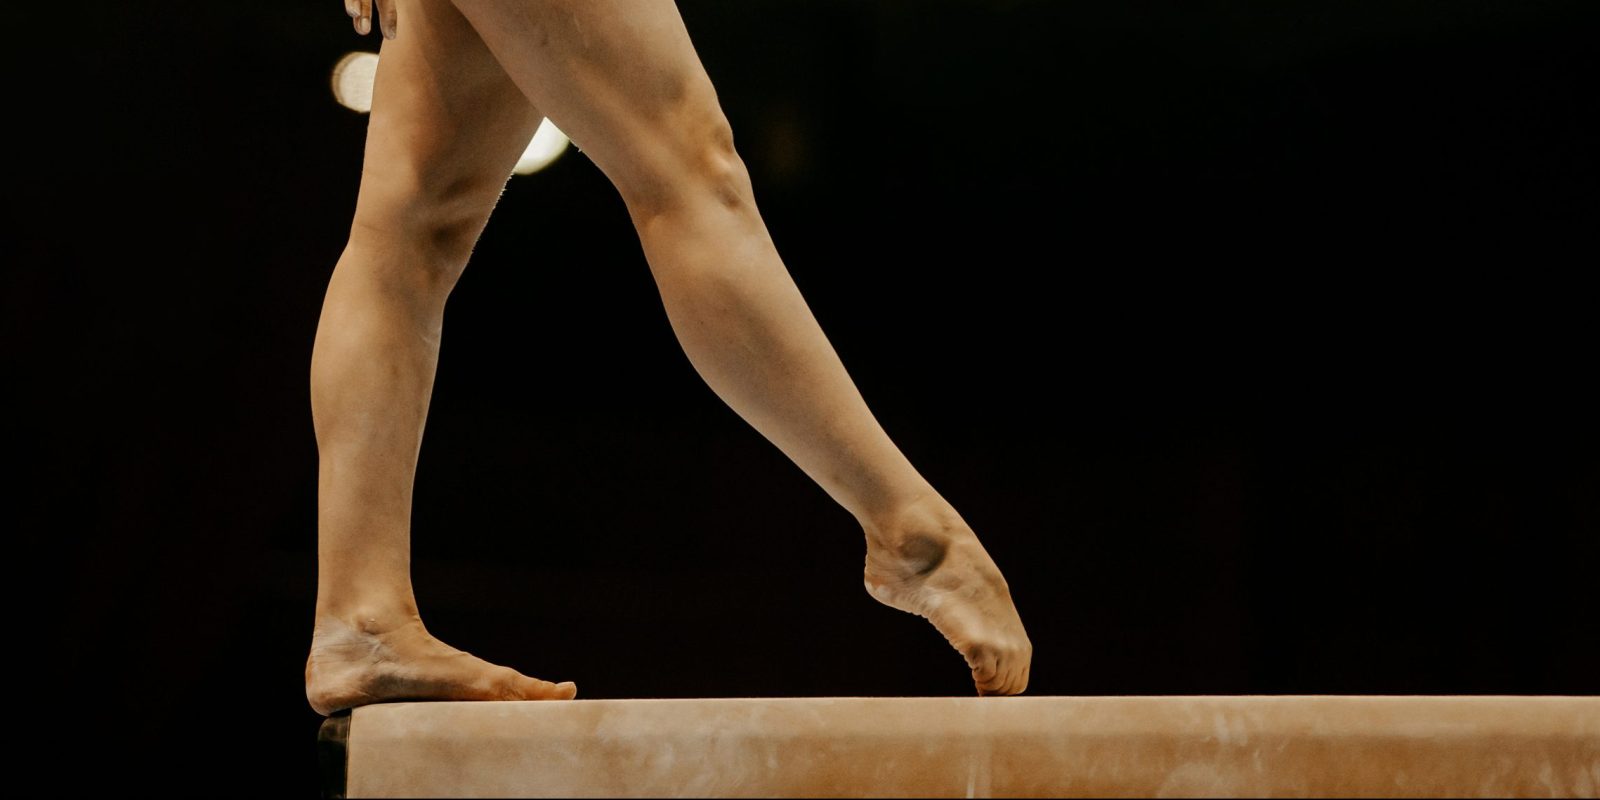 side view legs female gymnast in balance beam gymnastics